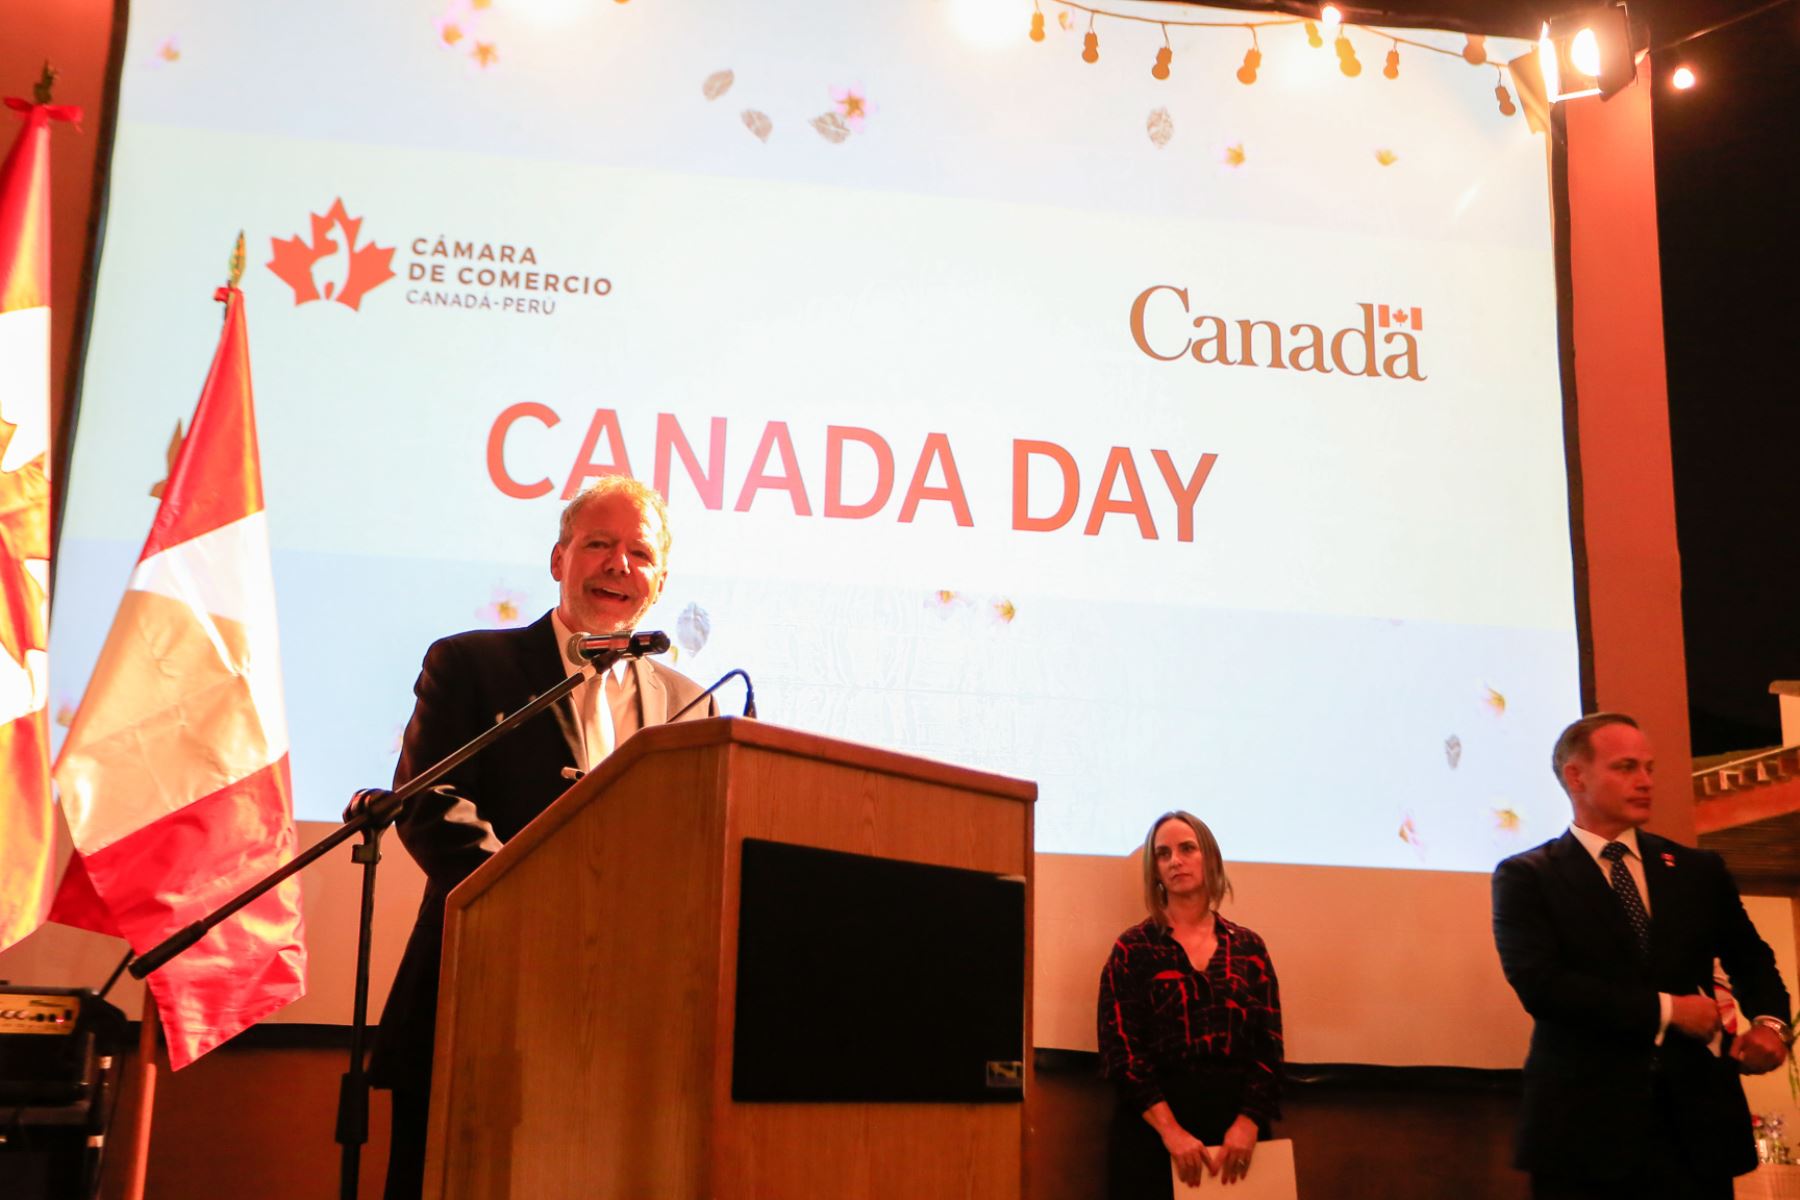 La celebración por el Día de Canadá incluyó la recreación del solticio de verano. Foto: ANDINA/Difusión